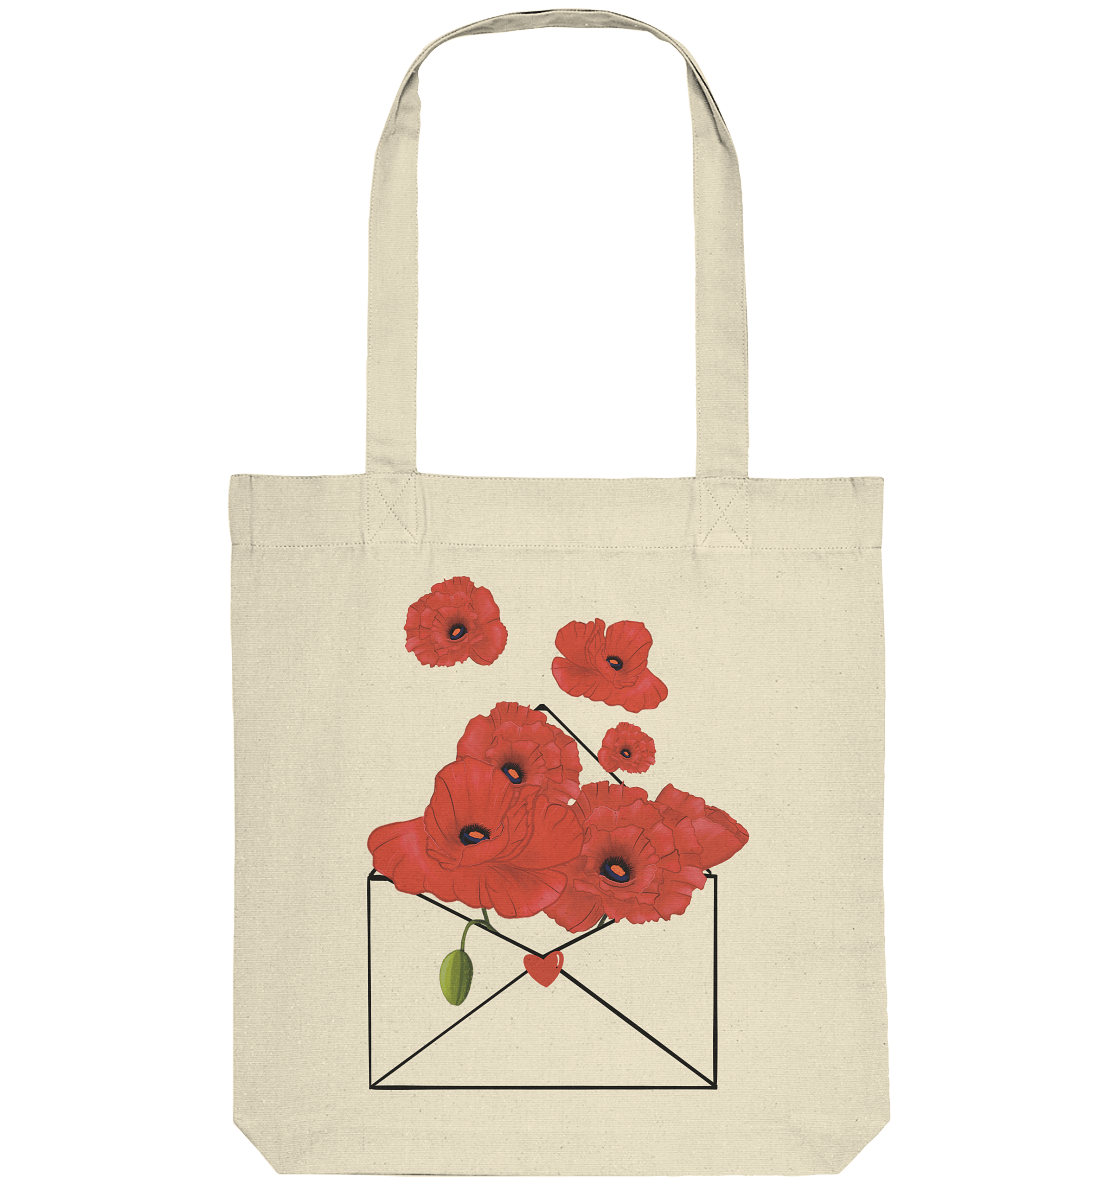 Stofftasche mit handgezeichneten roten Mohnblumen. 